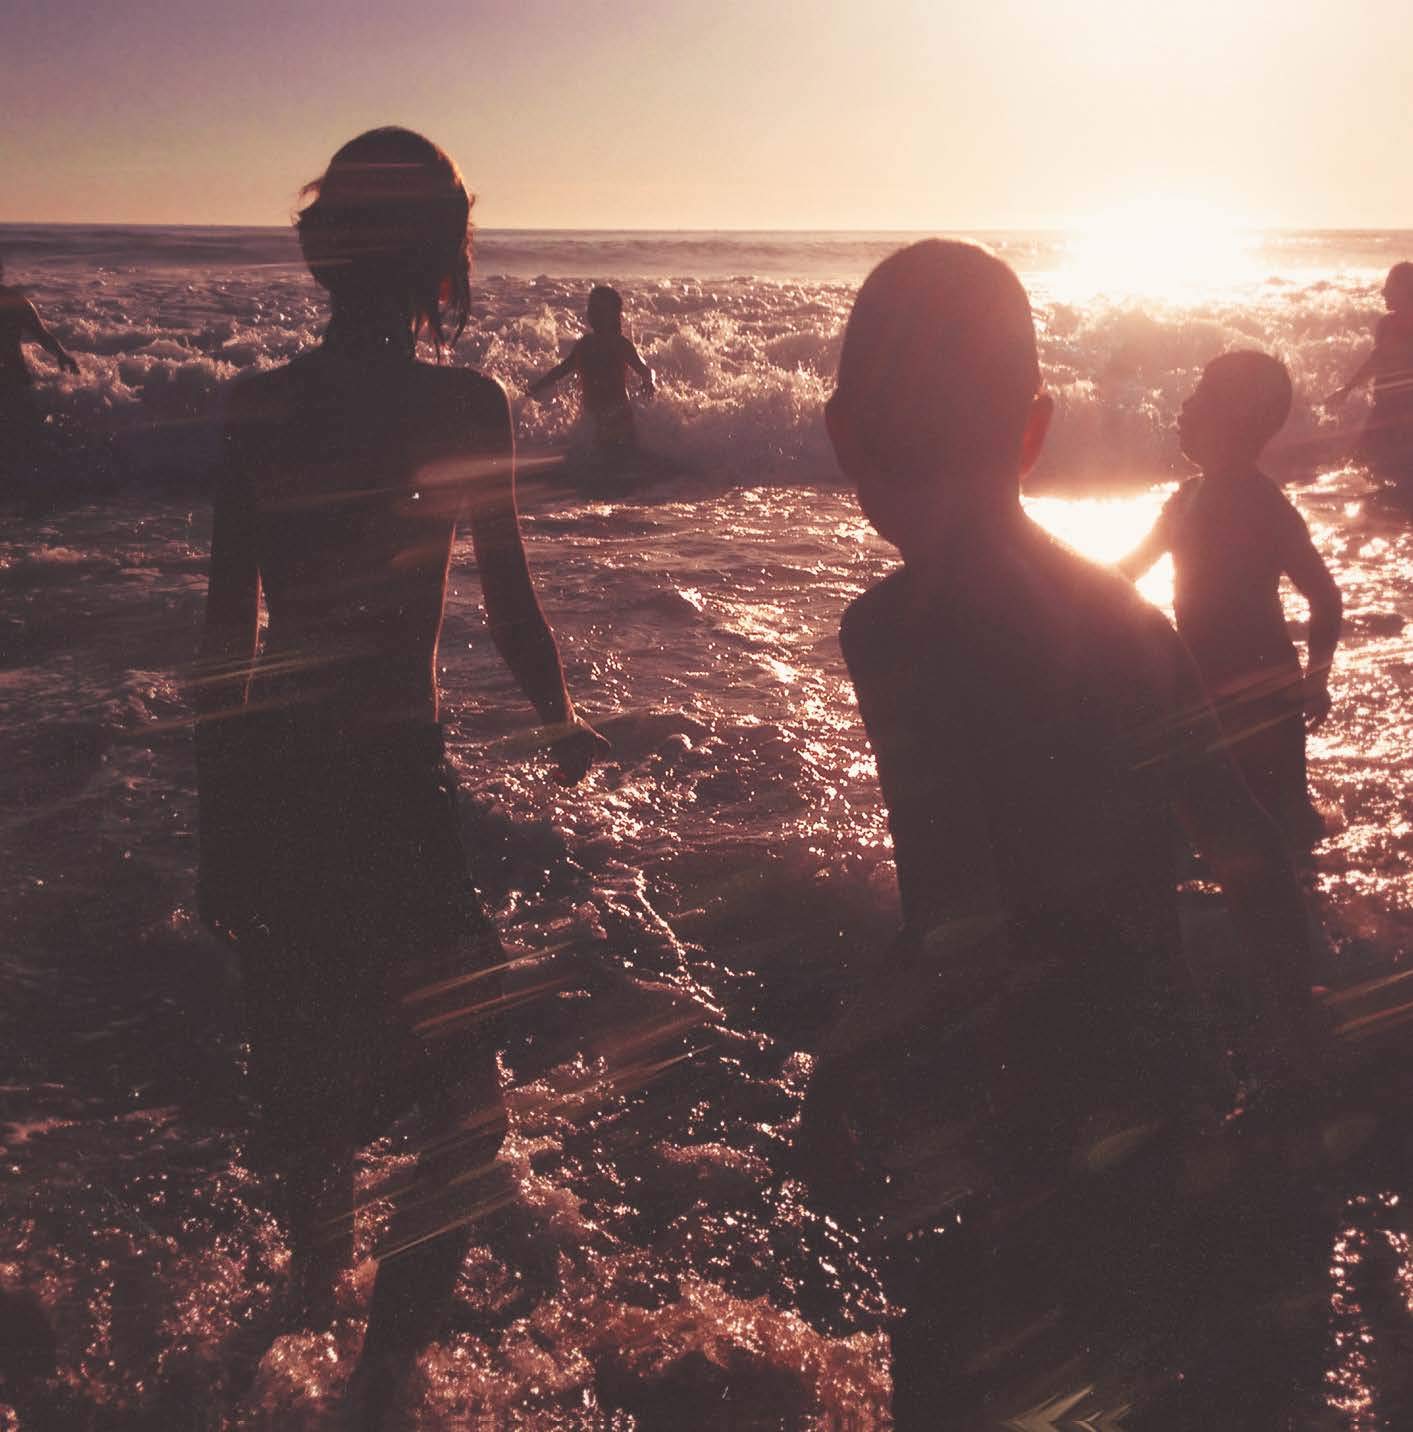 Història d'un suïcidi: les cançons de Linkin Park que expliquen Chester Bennington